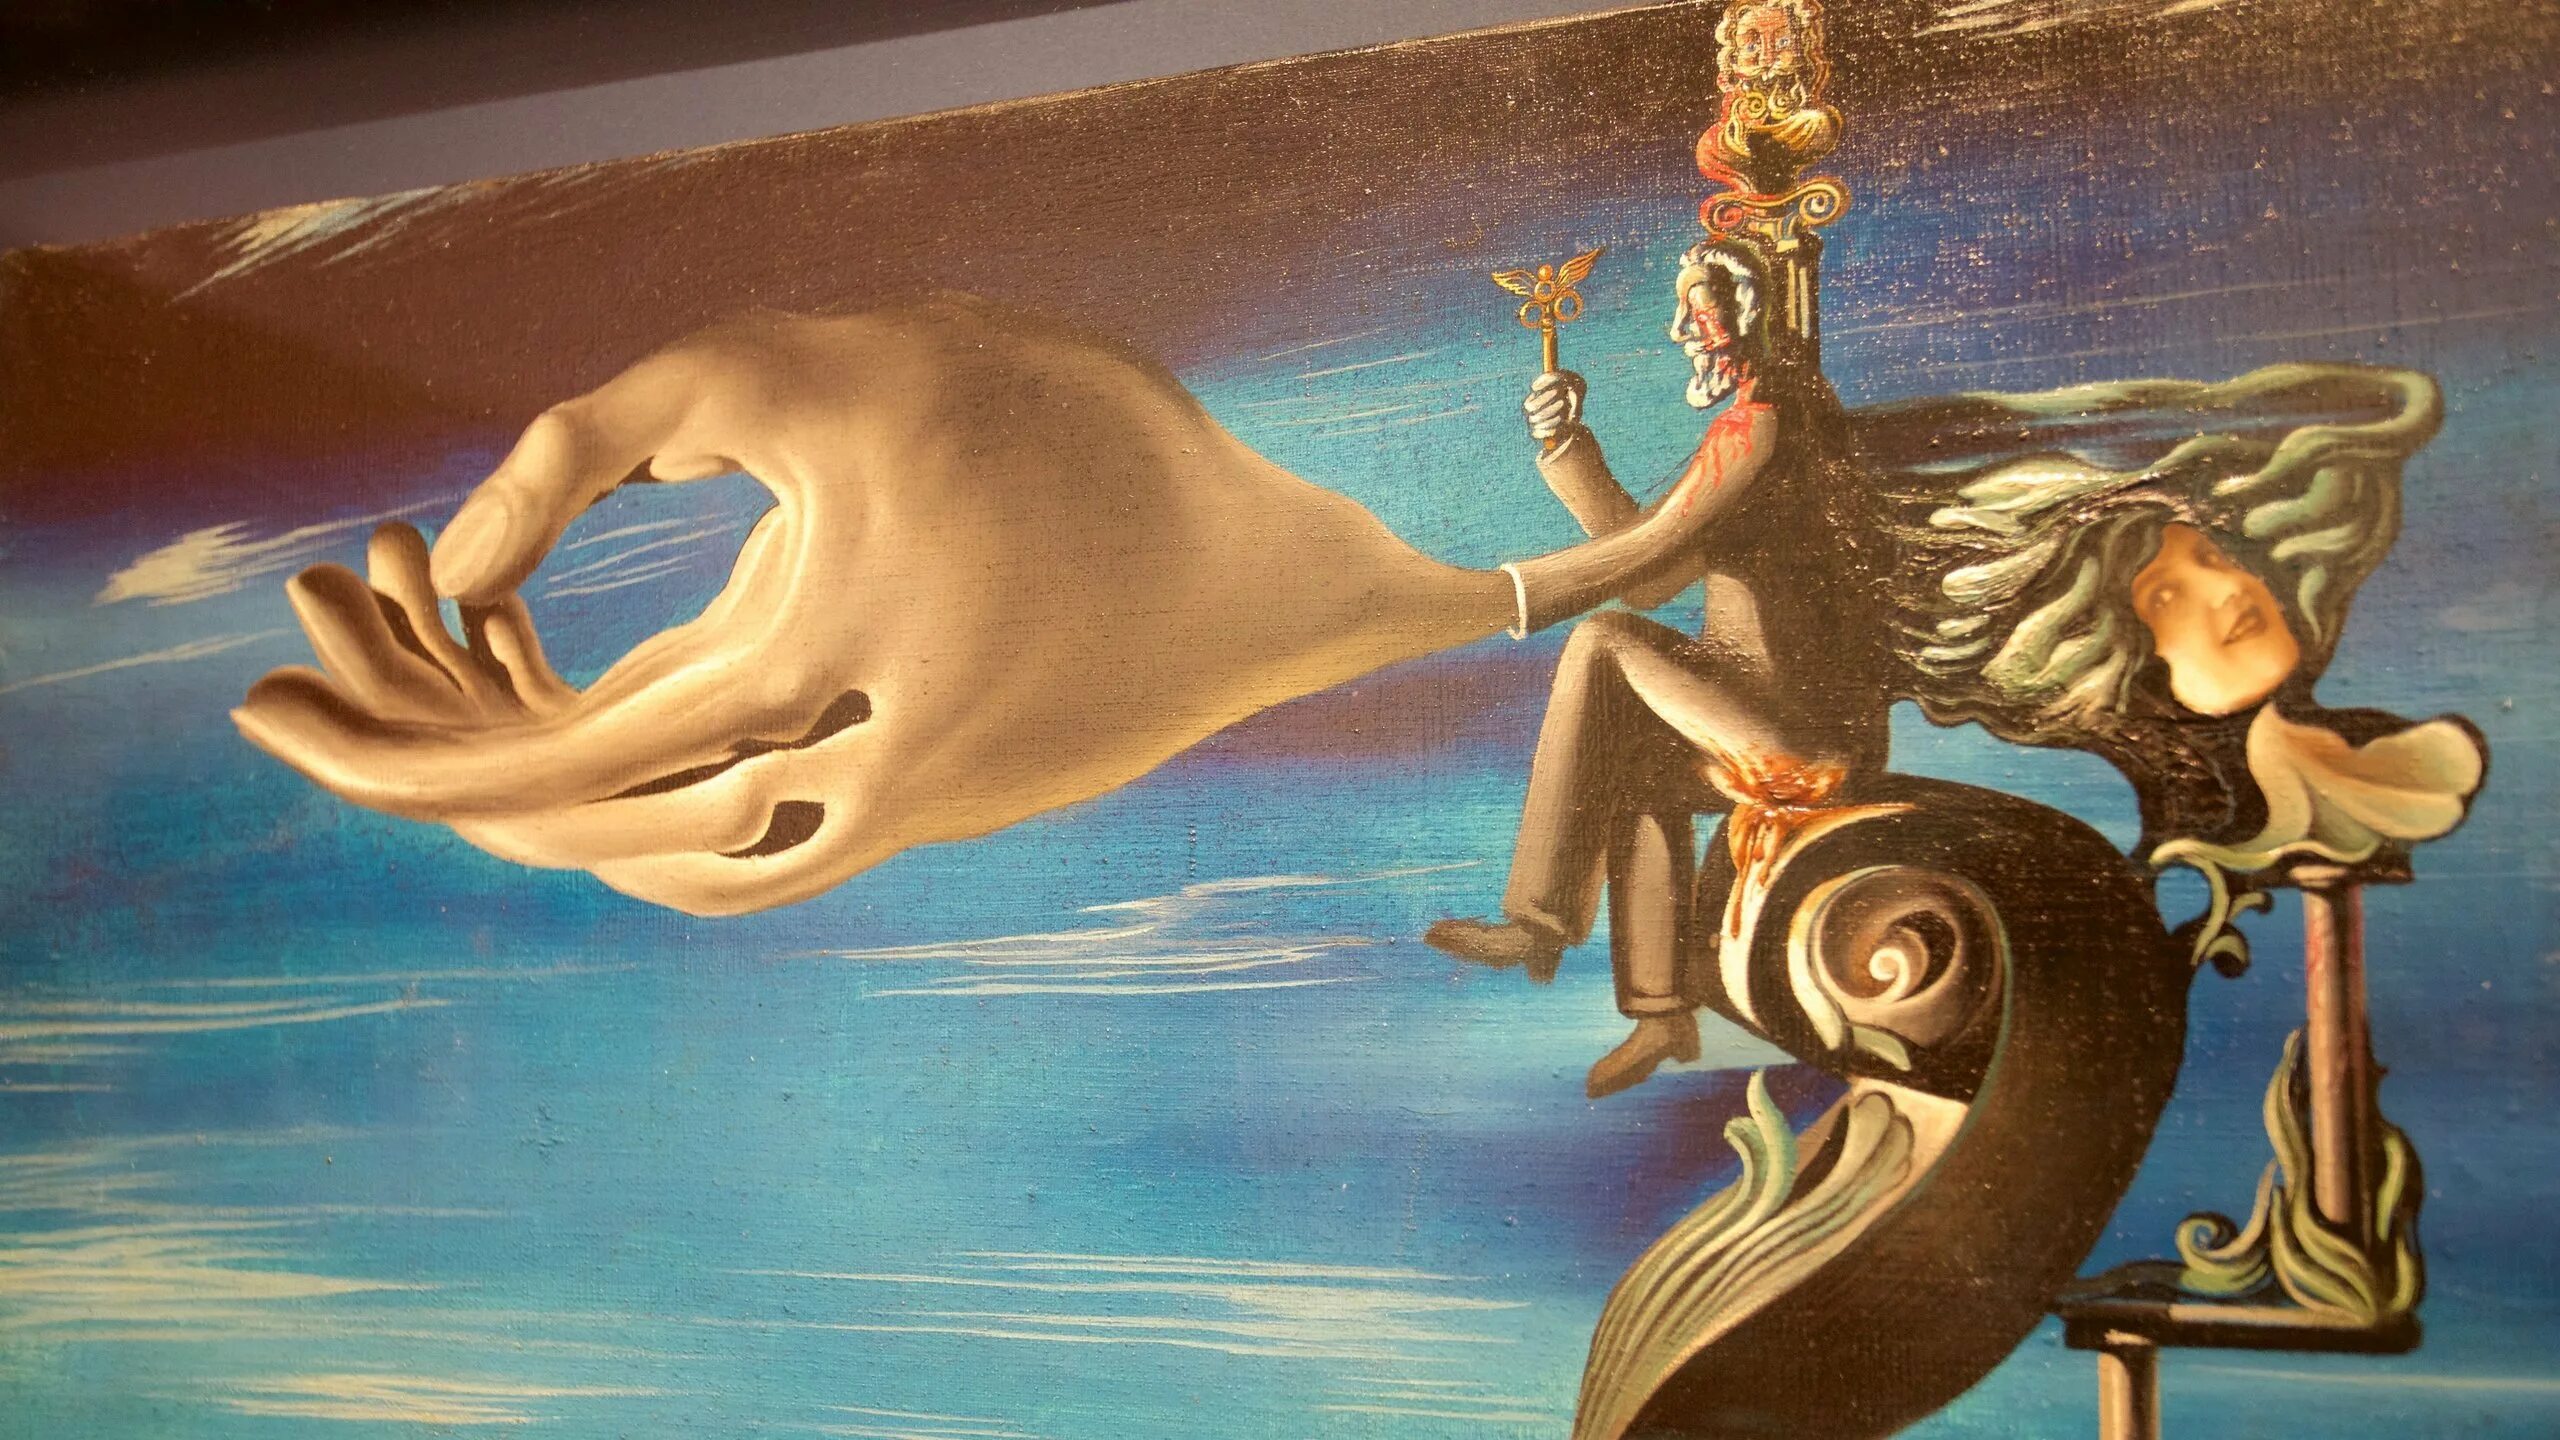 Salvador Dali картины. Великолепие руки Сальвадор дали. Сальвадор дали угрызения совести. Сальвадор дали (Salvador Dali) — «расплавленные часы». Обожа мый муч мый угрызениями совести